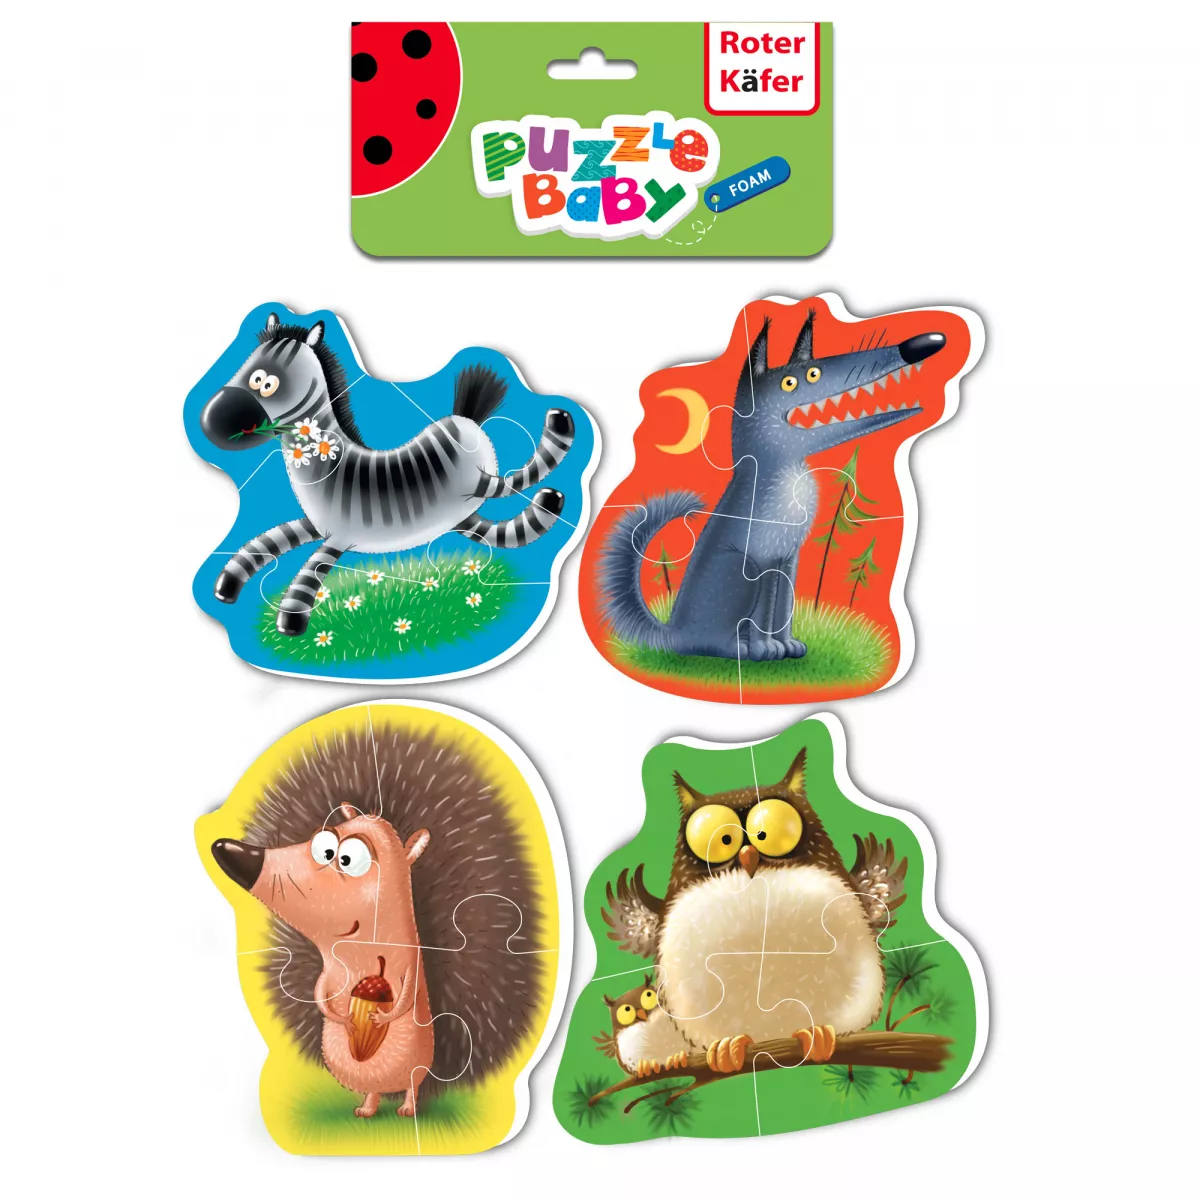 Set de 4 puzzle-uri a câte 4 piese din spumă: zebră, lup, arici și bufniță